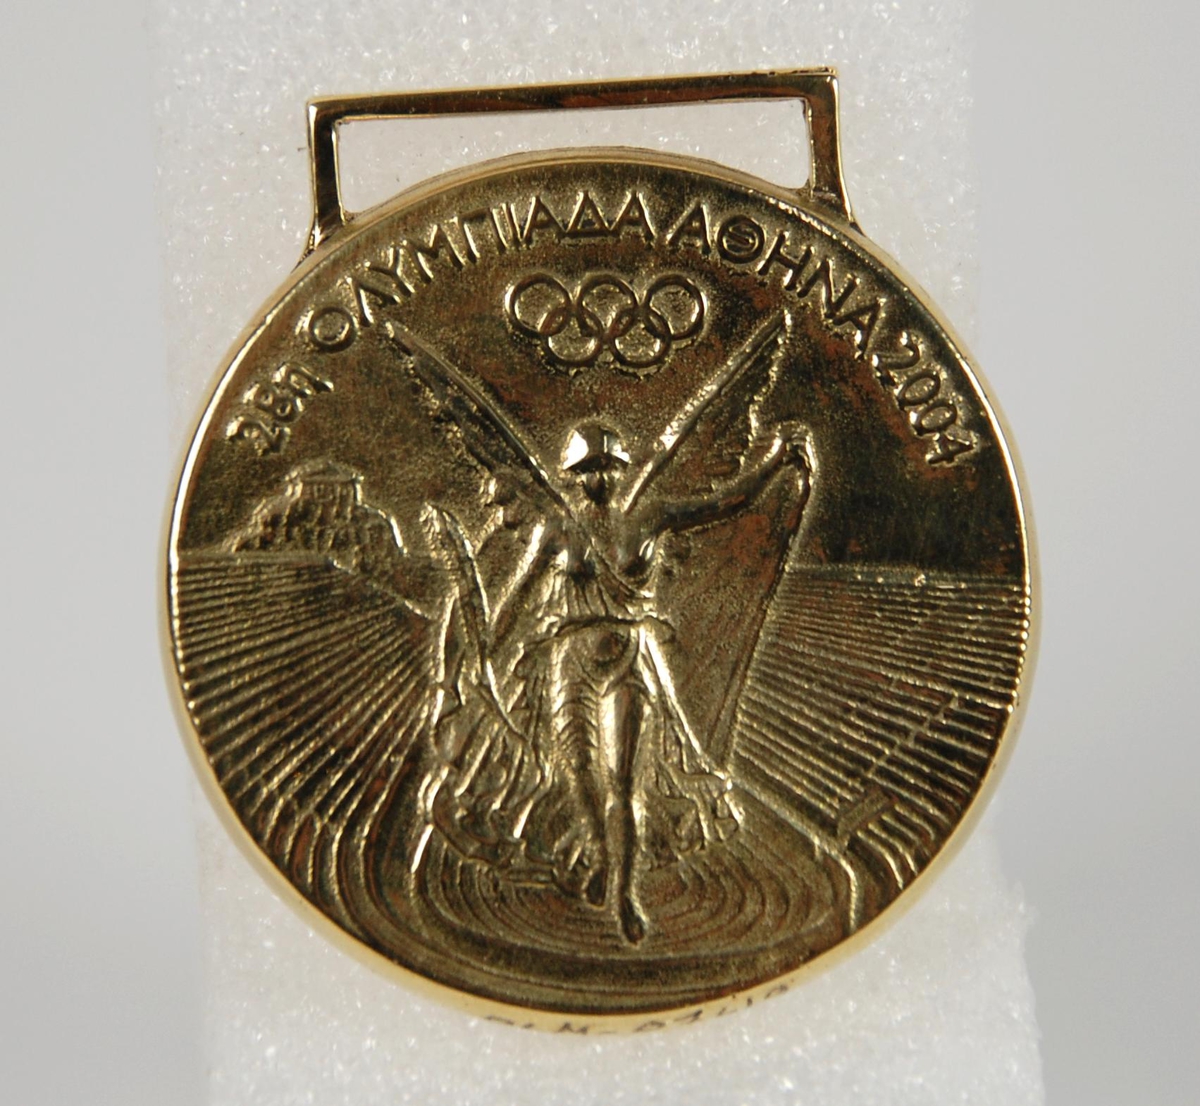 Gullmedalje med motiv av den greske seiersgudinnen Nike som flyr over en stadion. Medaljen har gresk innskrift.